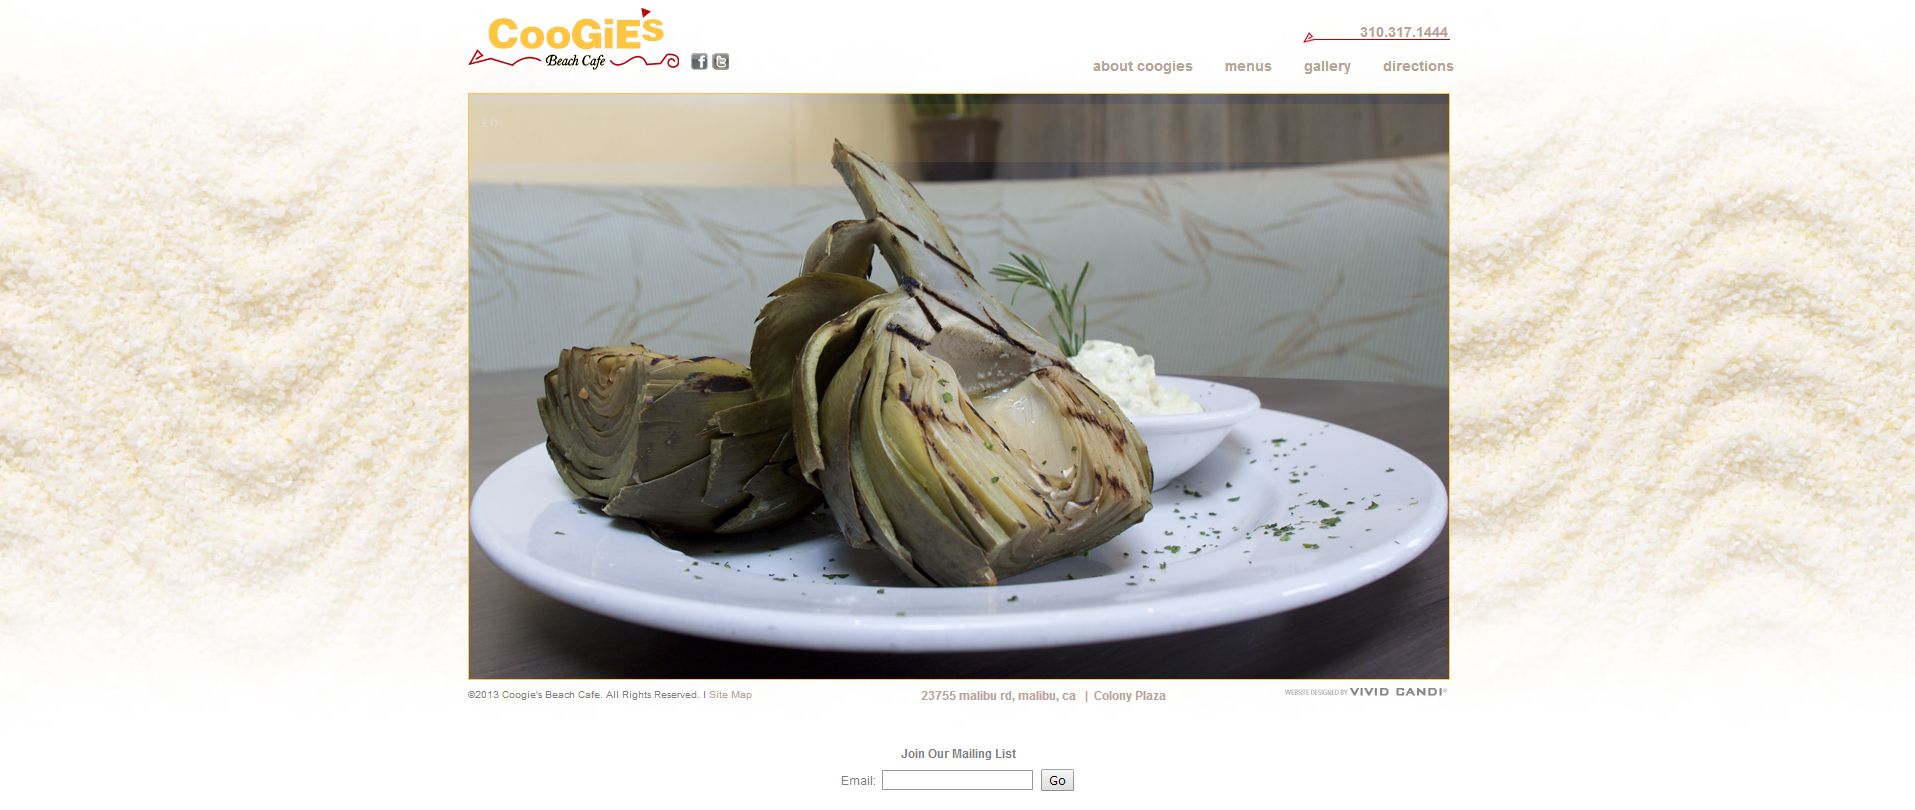 coogies website